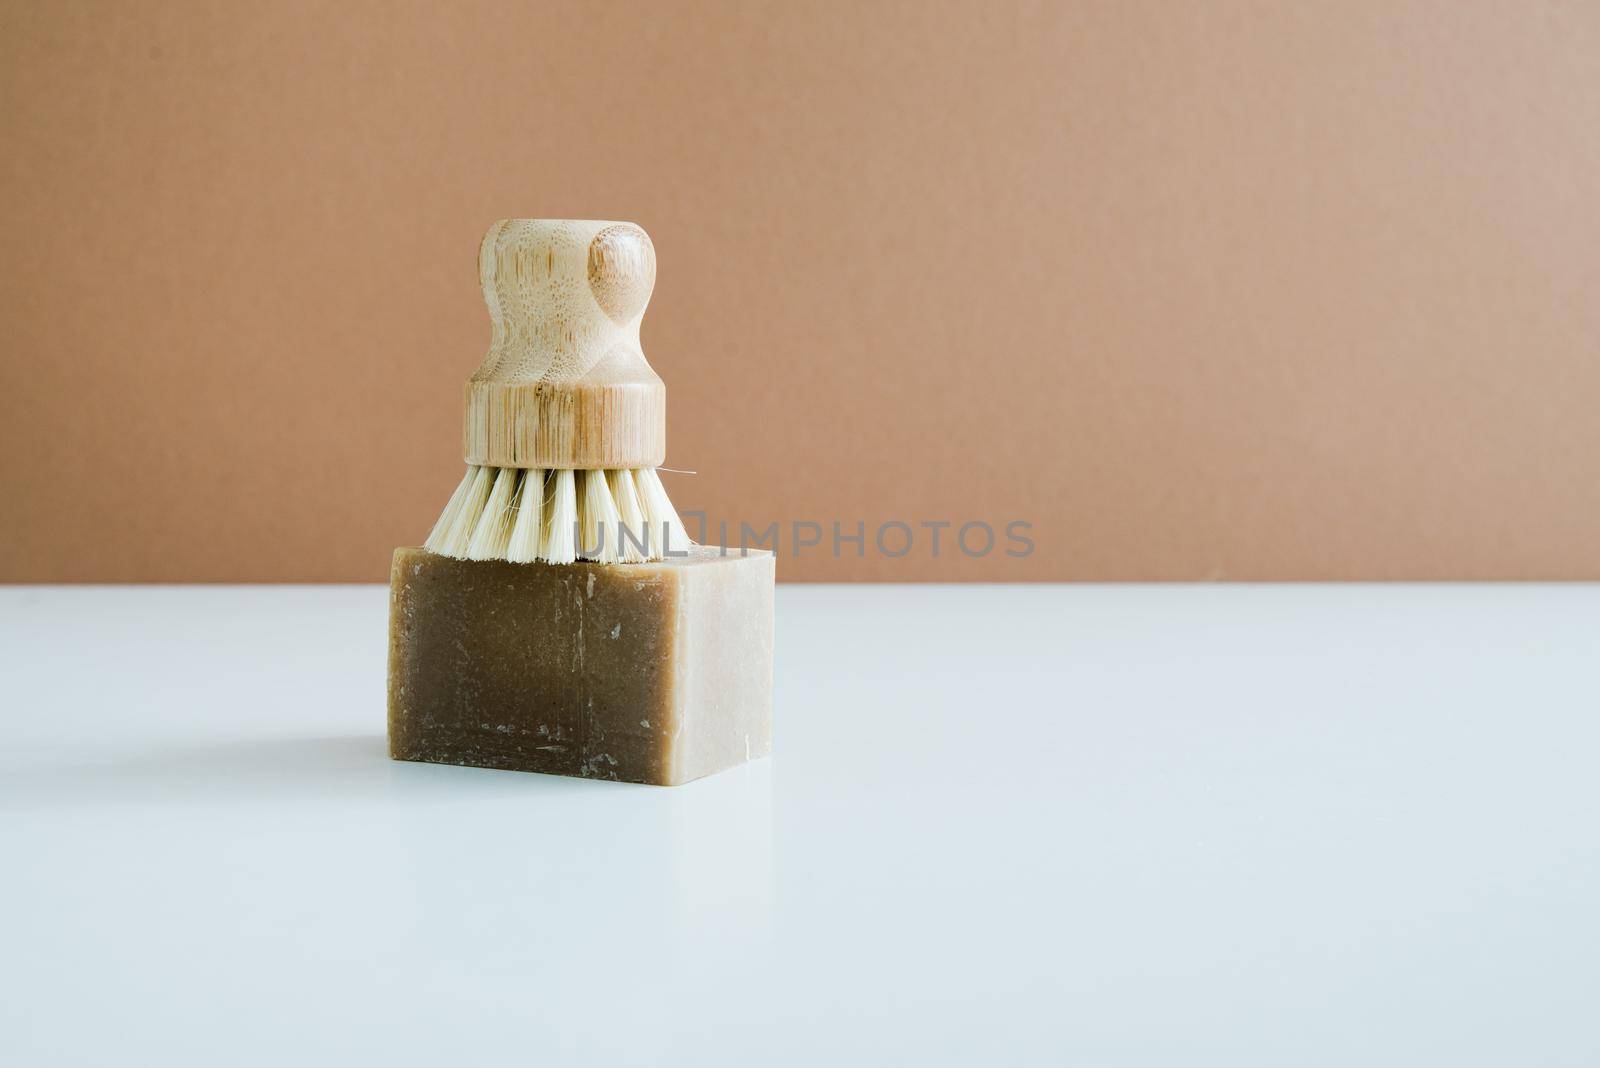 zero waste bamboo brush with soap for dishwashing . High quality photo